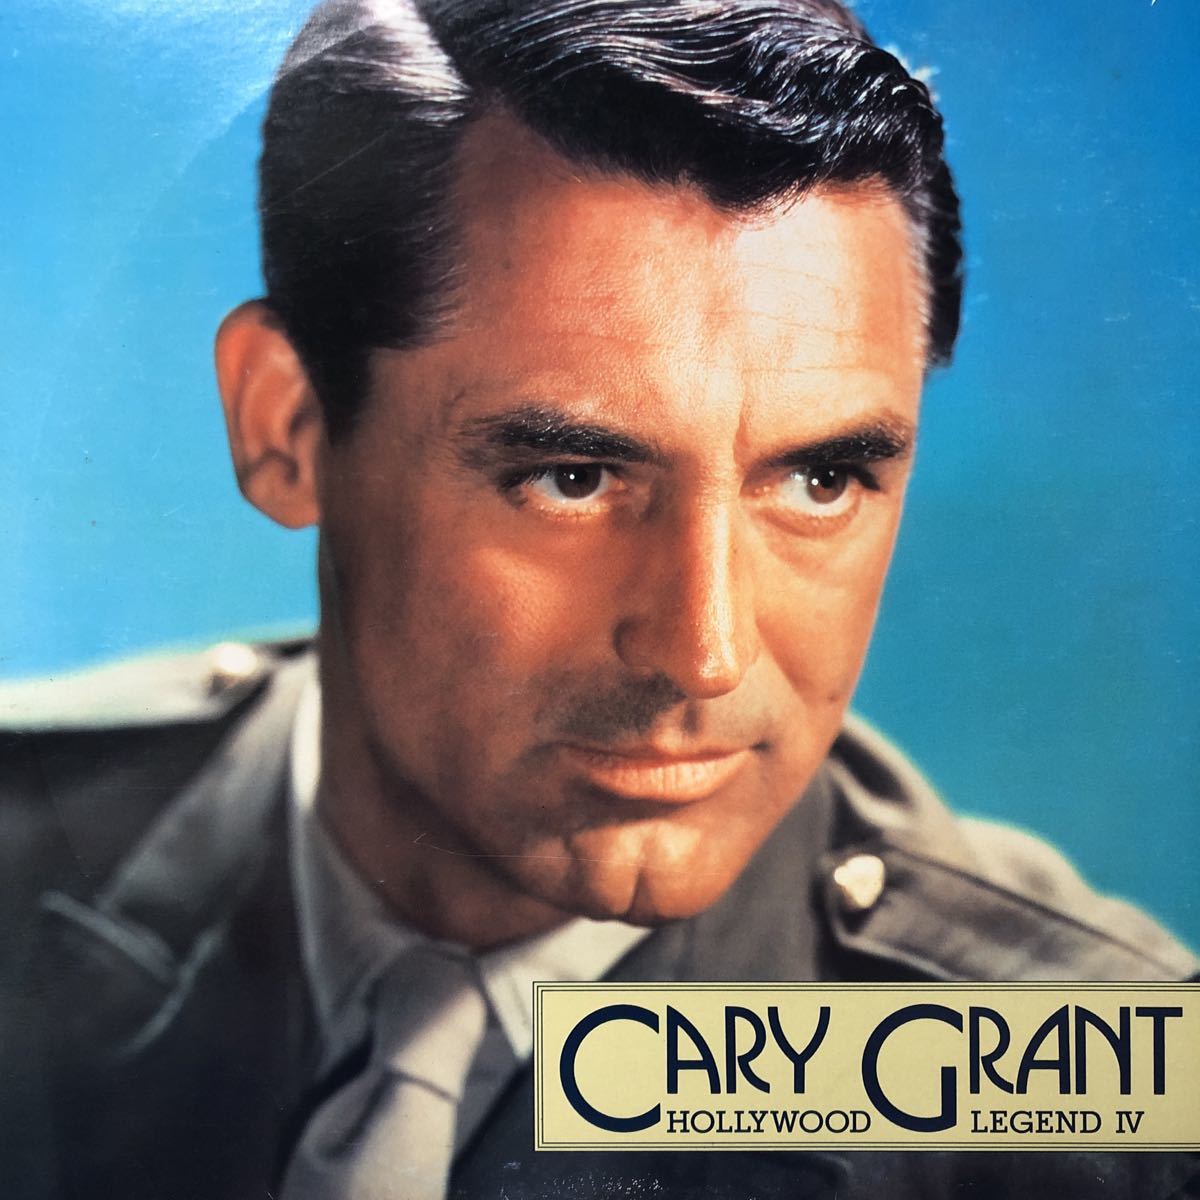 Cary Grant ケーリー・グラント〜ハリウッド・レジェンド(伝説)Ⅳ〜 LD レーザーディスク LP レコード 5点以上落札で送料無料E_画像2